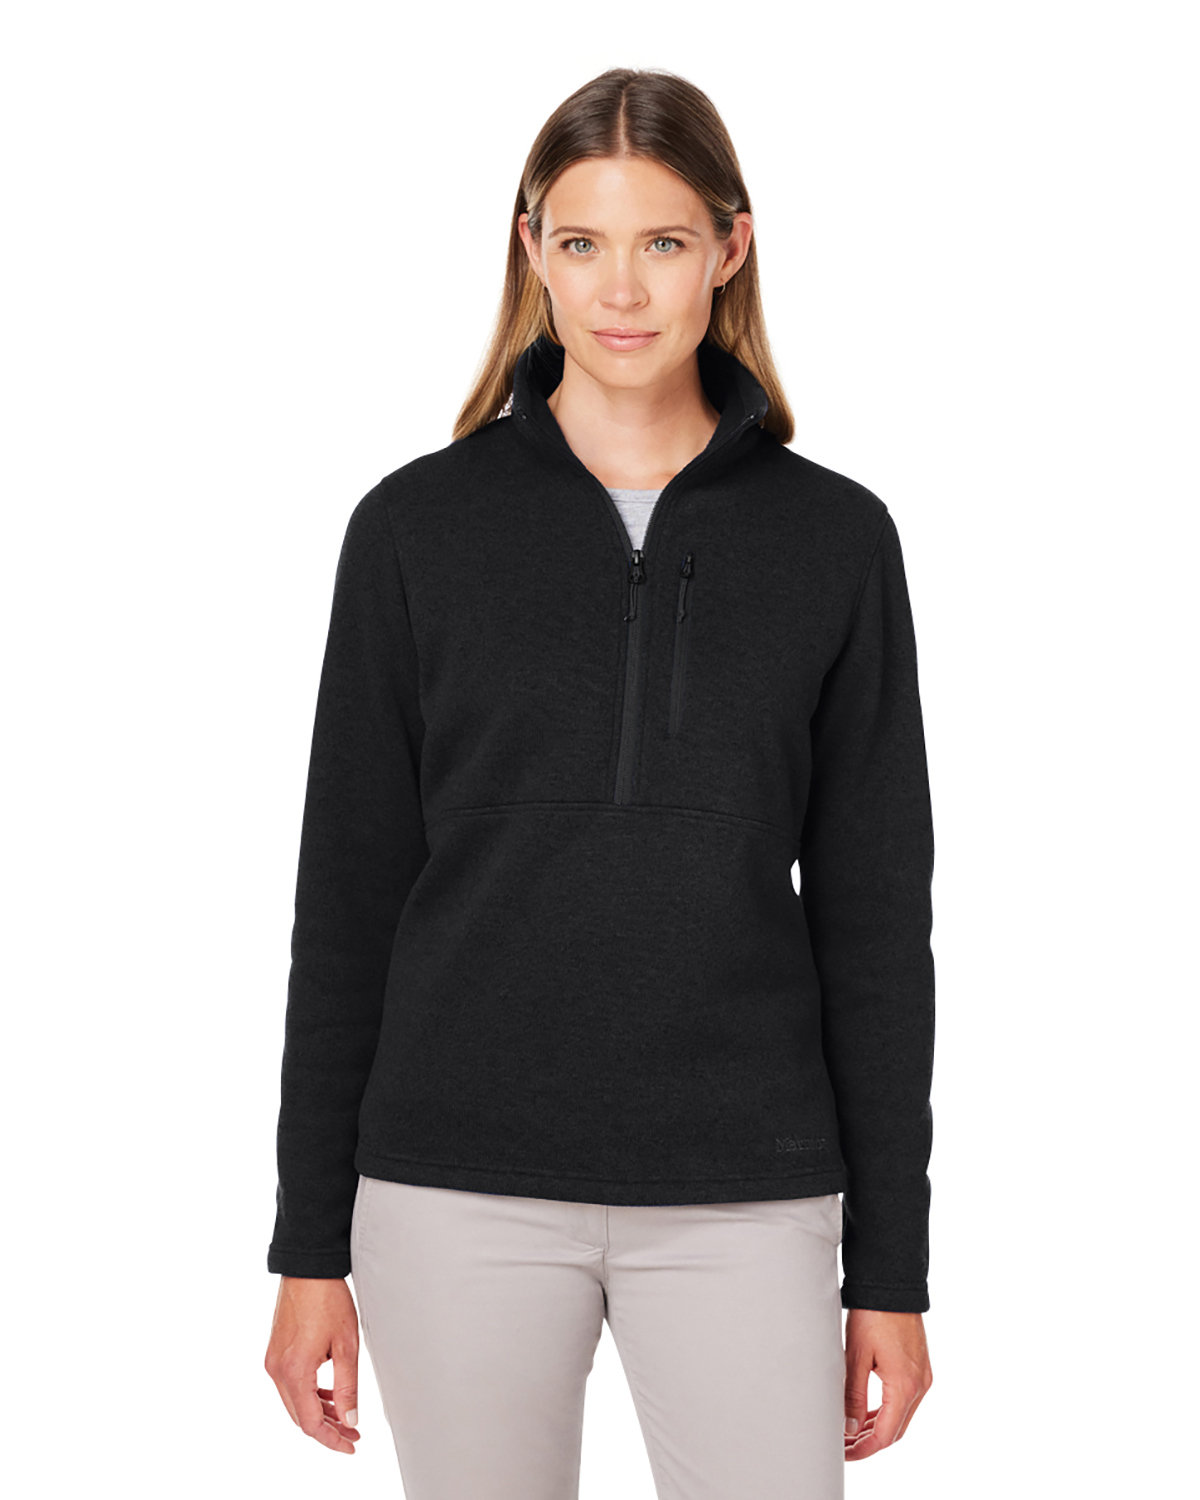 Marmot Ladies' Dropline Half-Zip Sweater Fleece Jacket | alphabroder